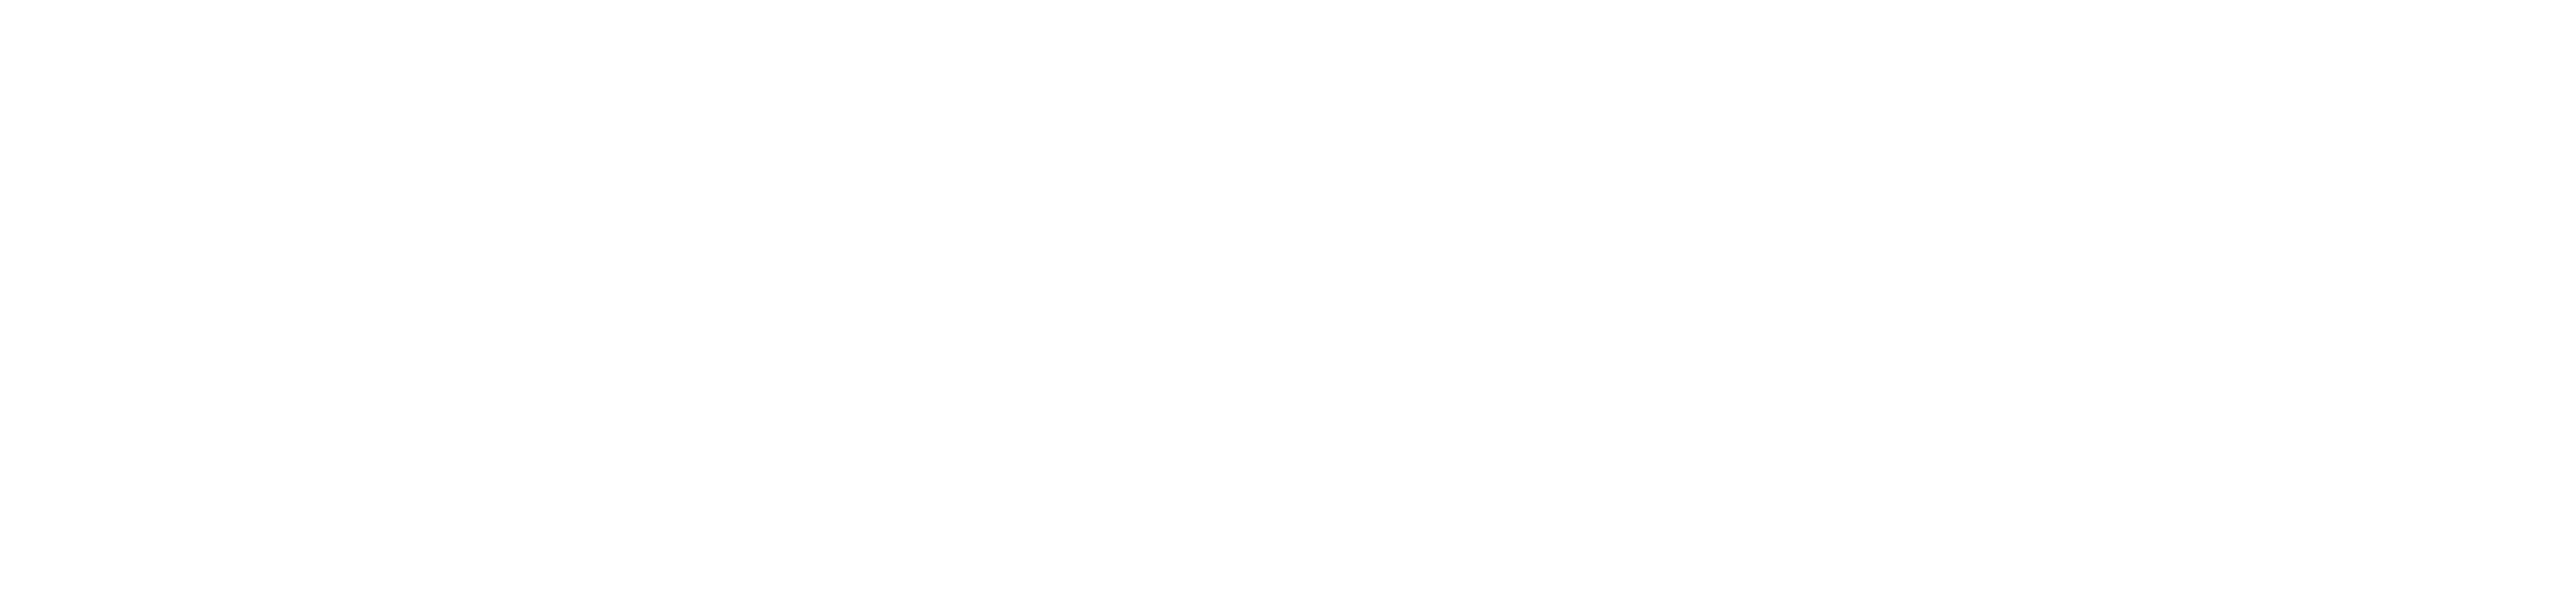 Breavis_Logo White